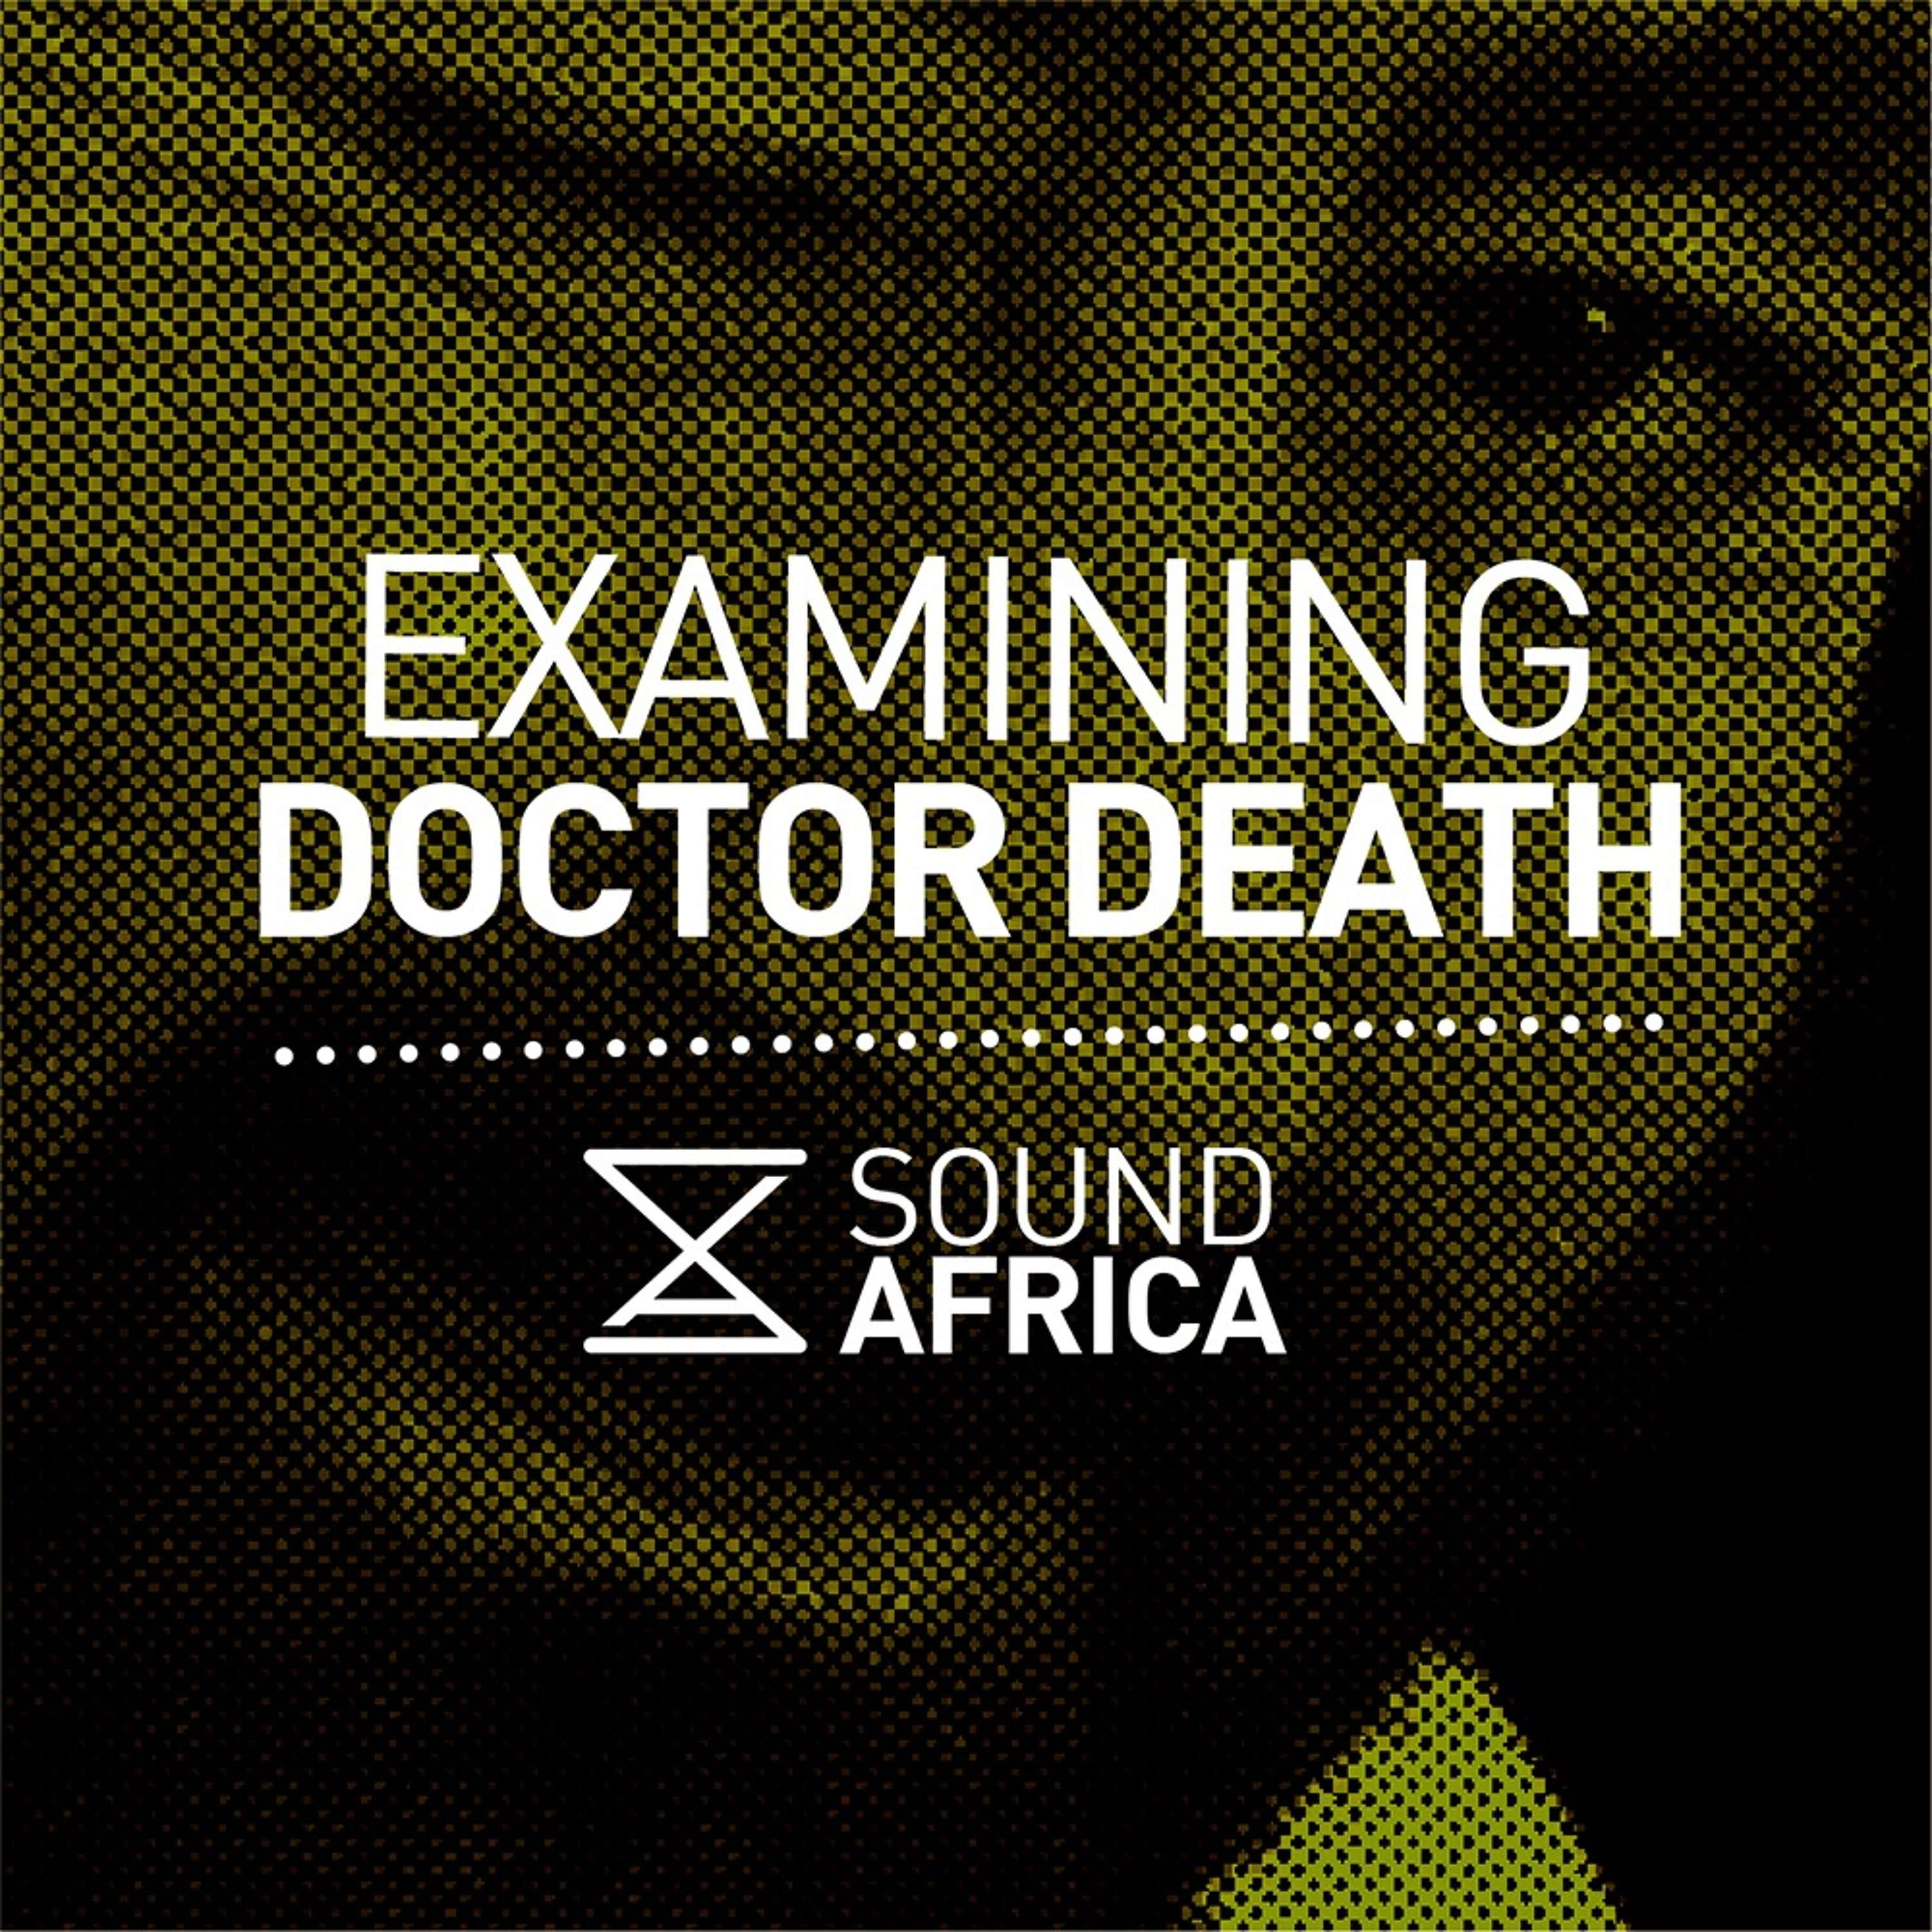 Examining Doctor Death